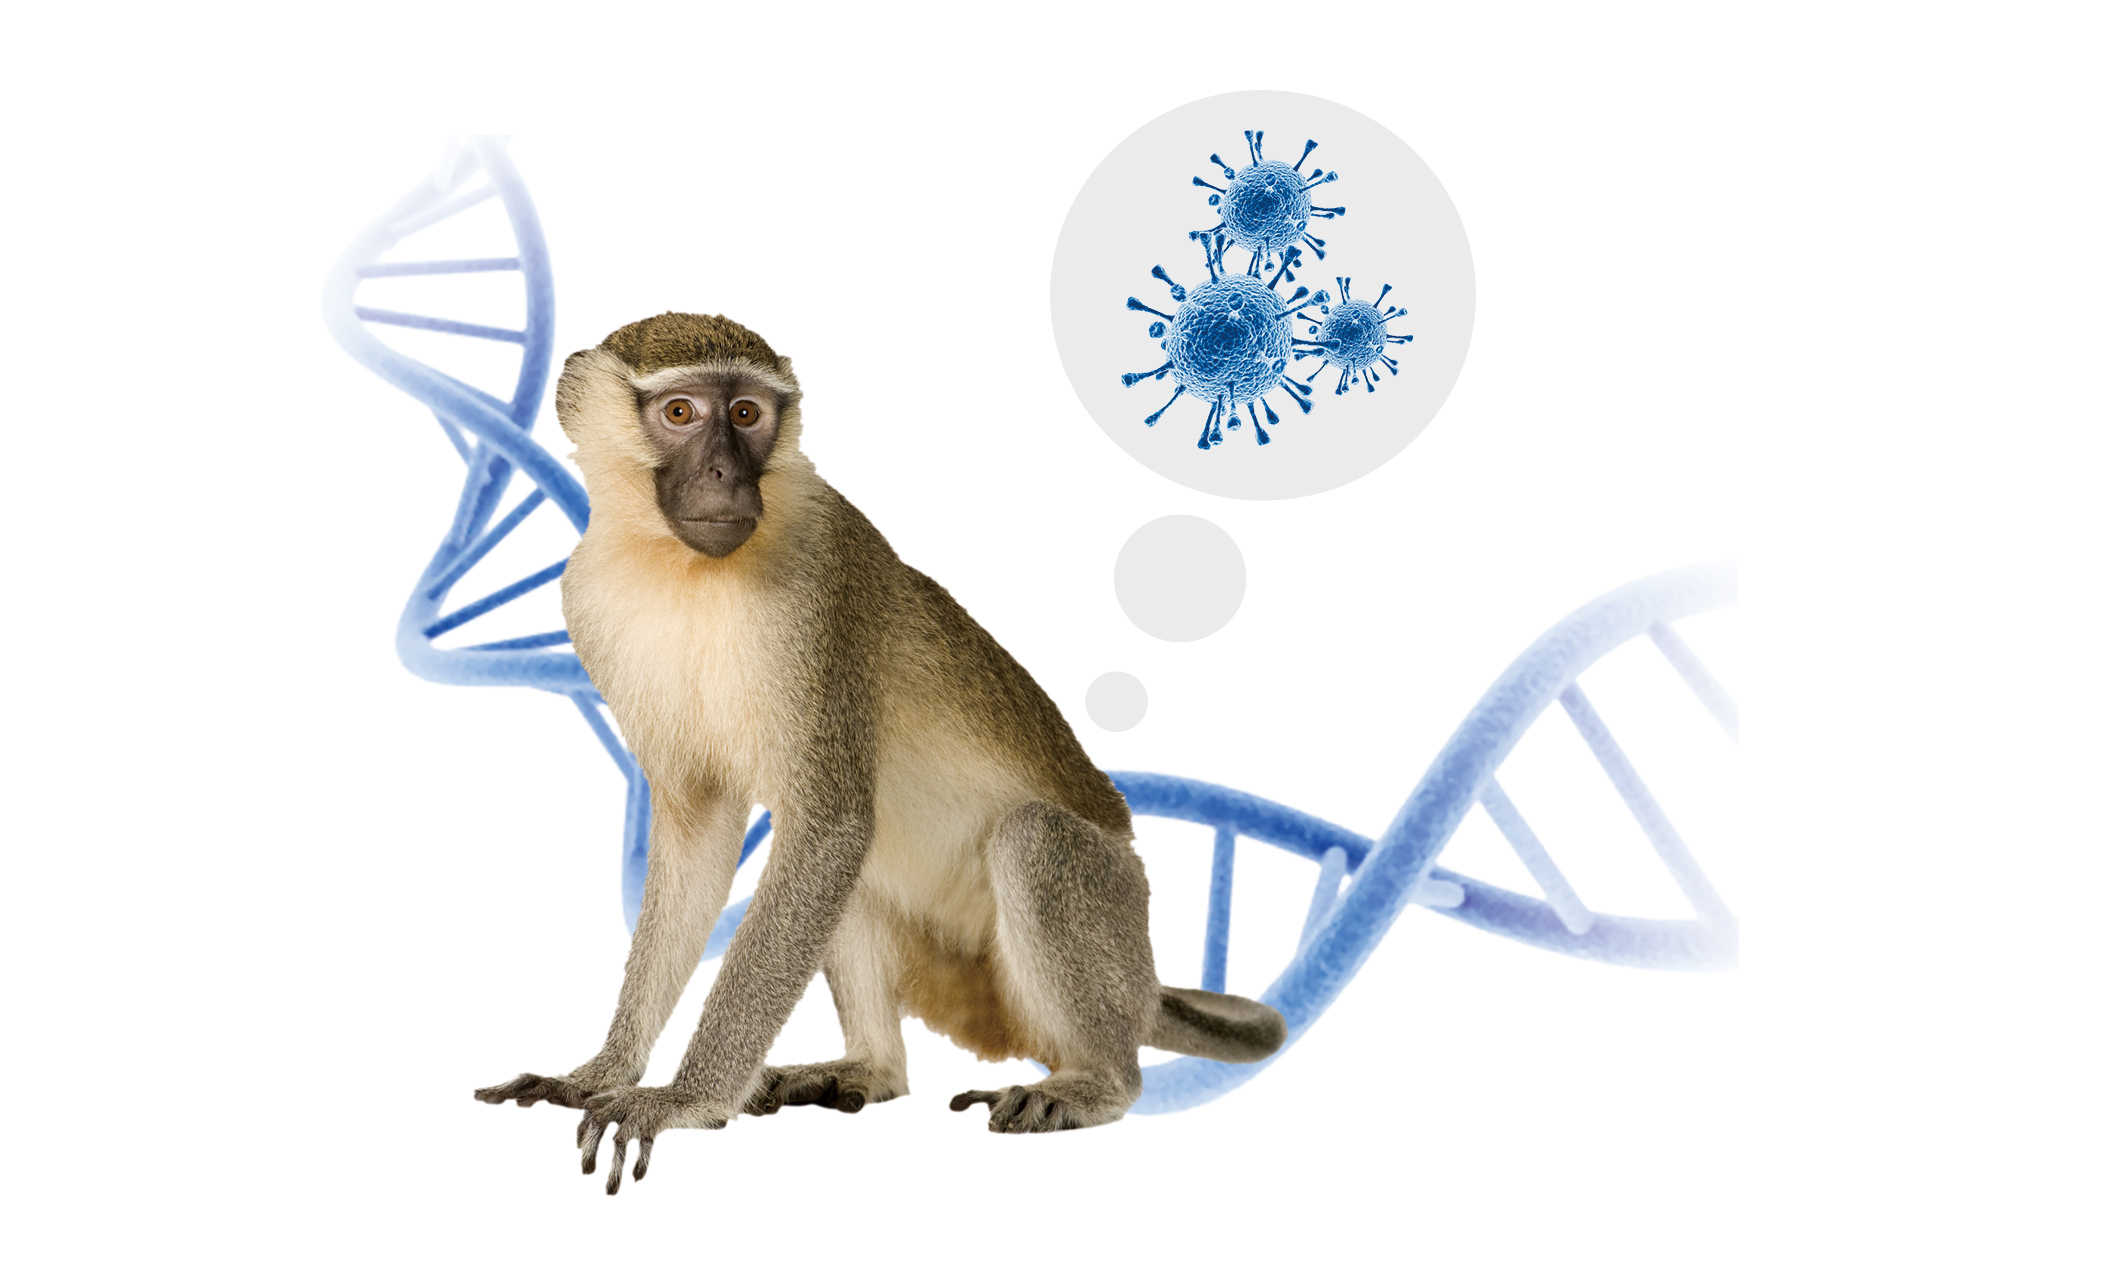 Epidemia di vaiolo delle scimmie: cosa dovremmo sapere?